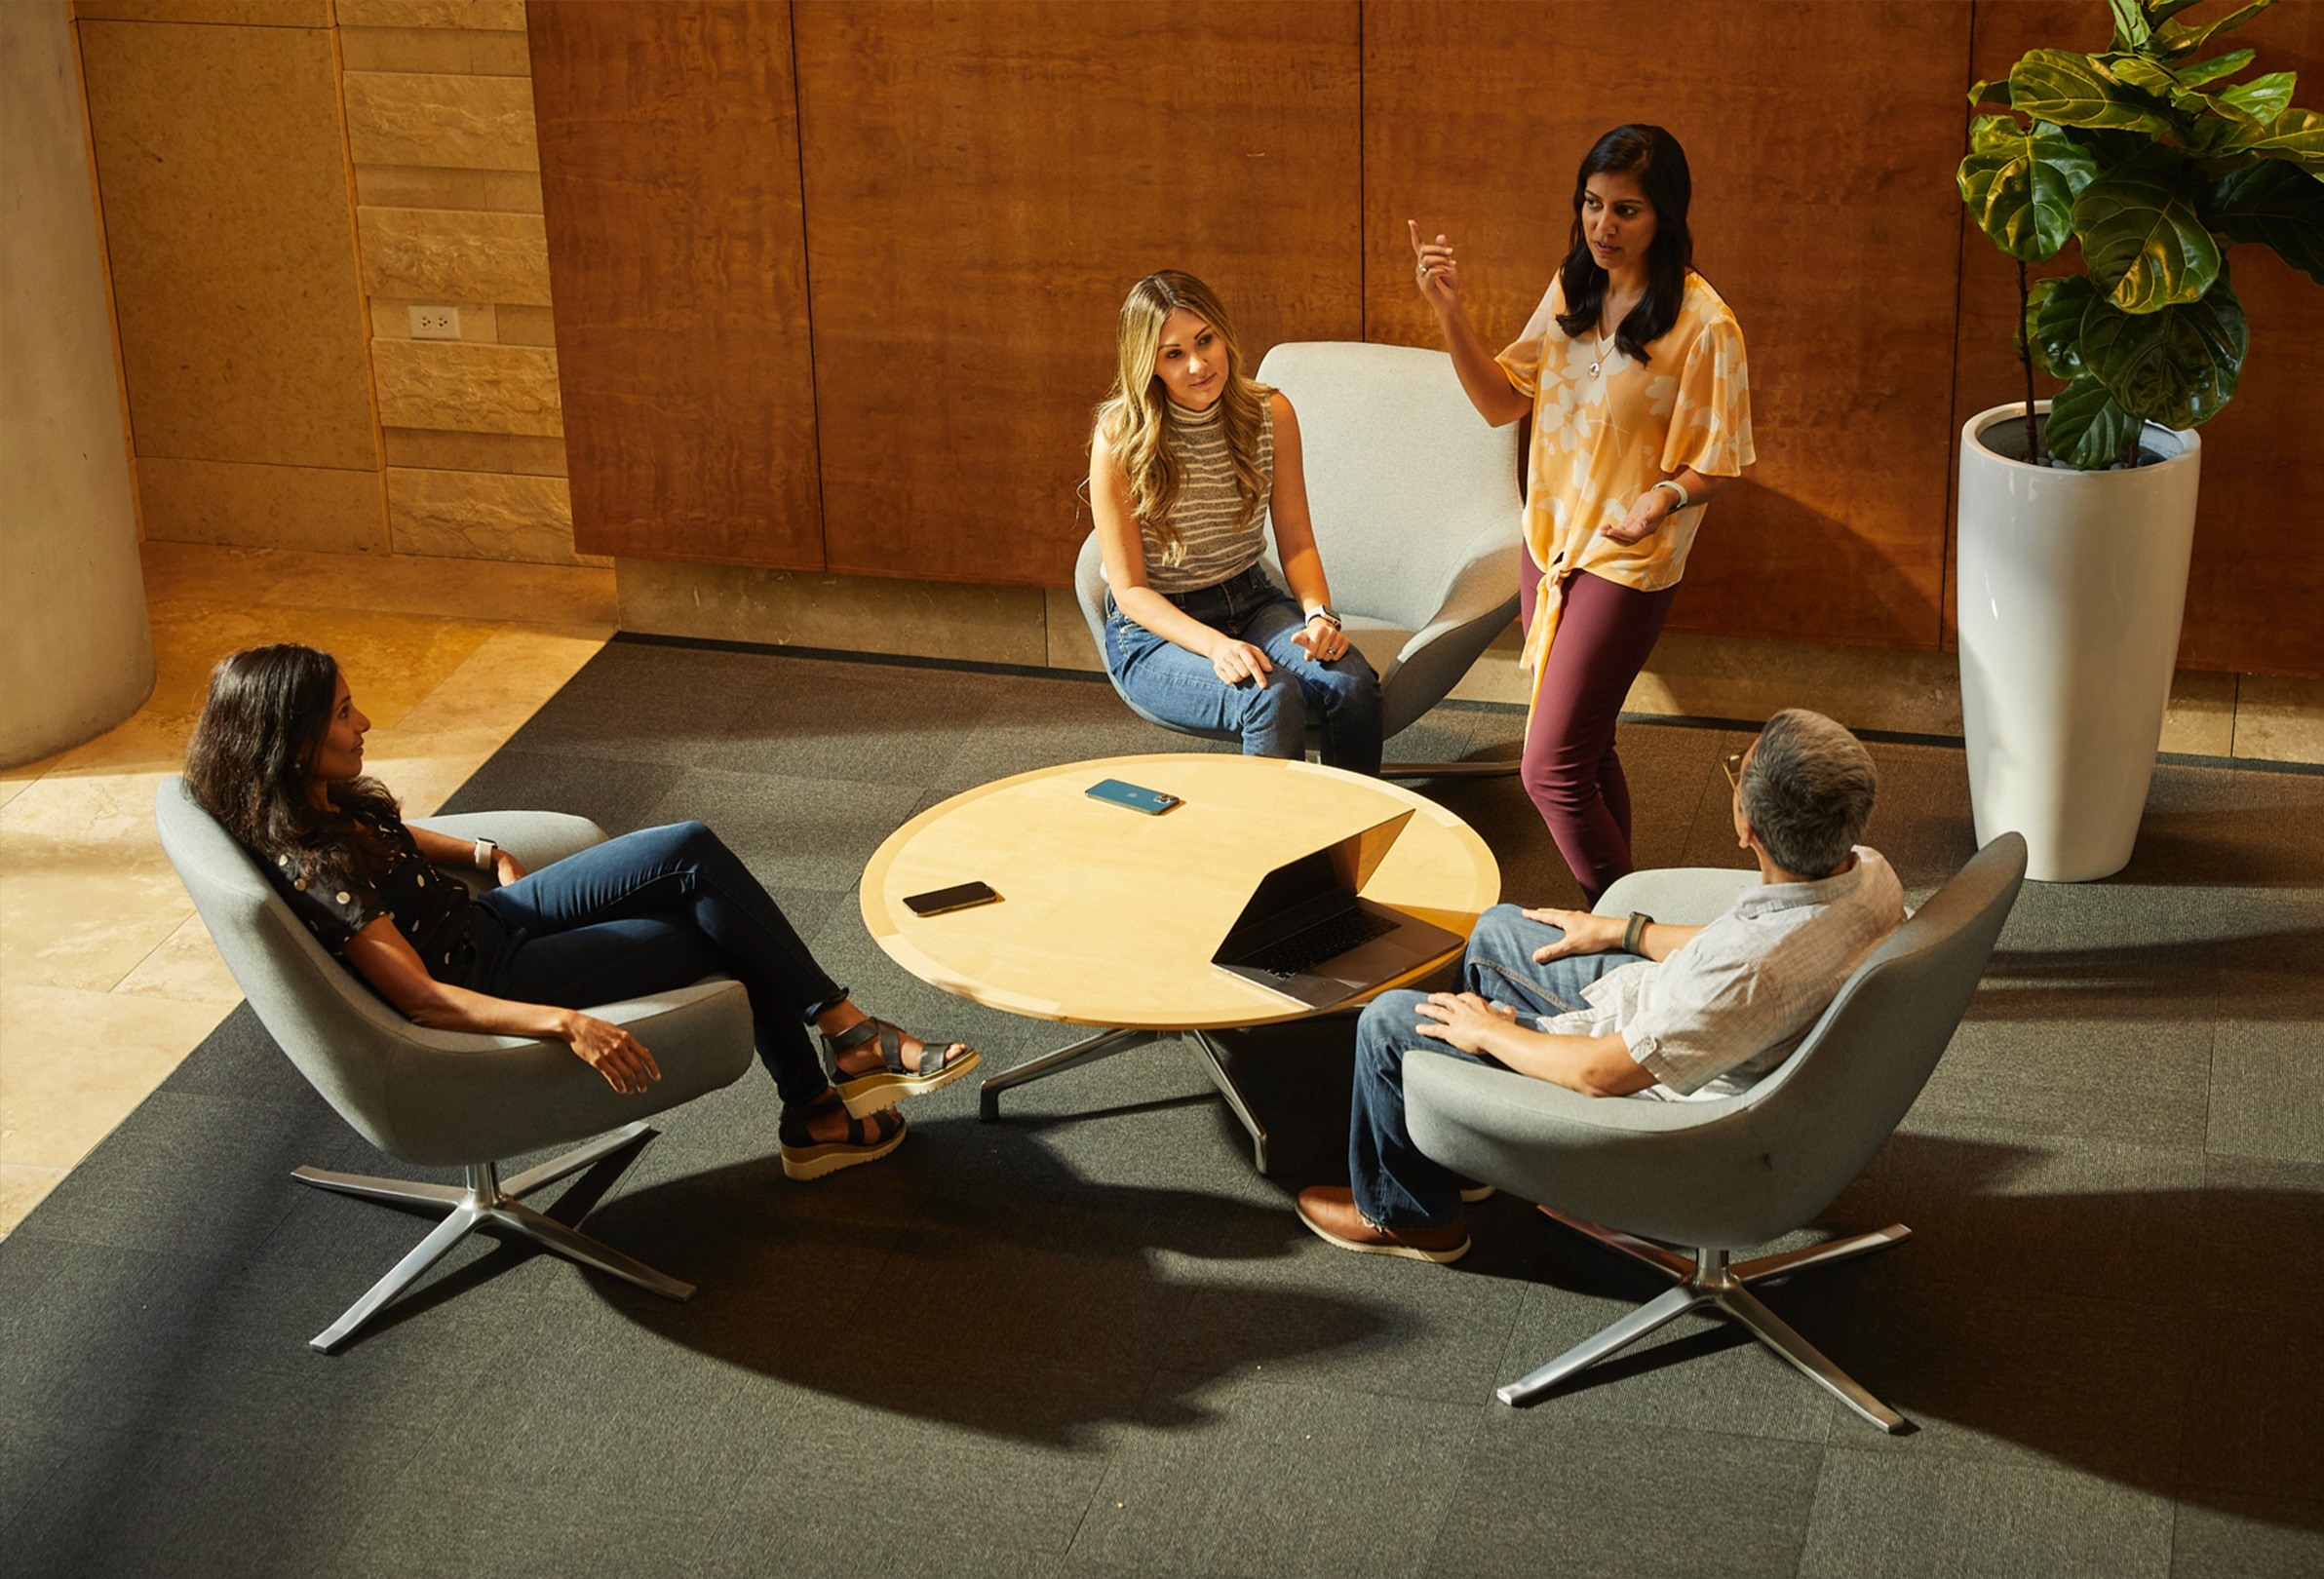 Čtyři zaměstnanci společnosti Apple sedí a povídají si v uvolněném prostředí prostoru pro spolupráci.